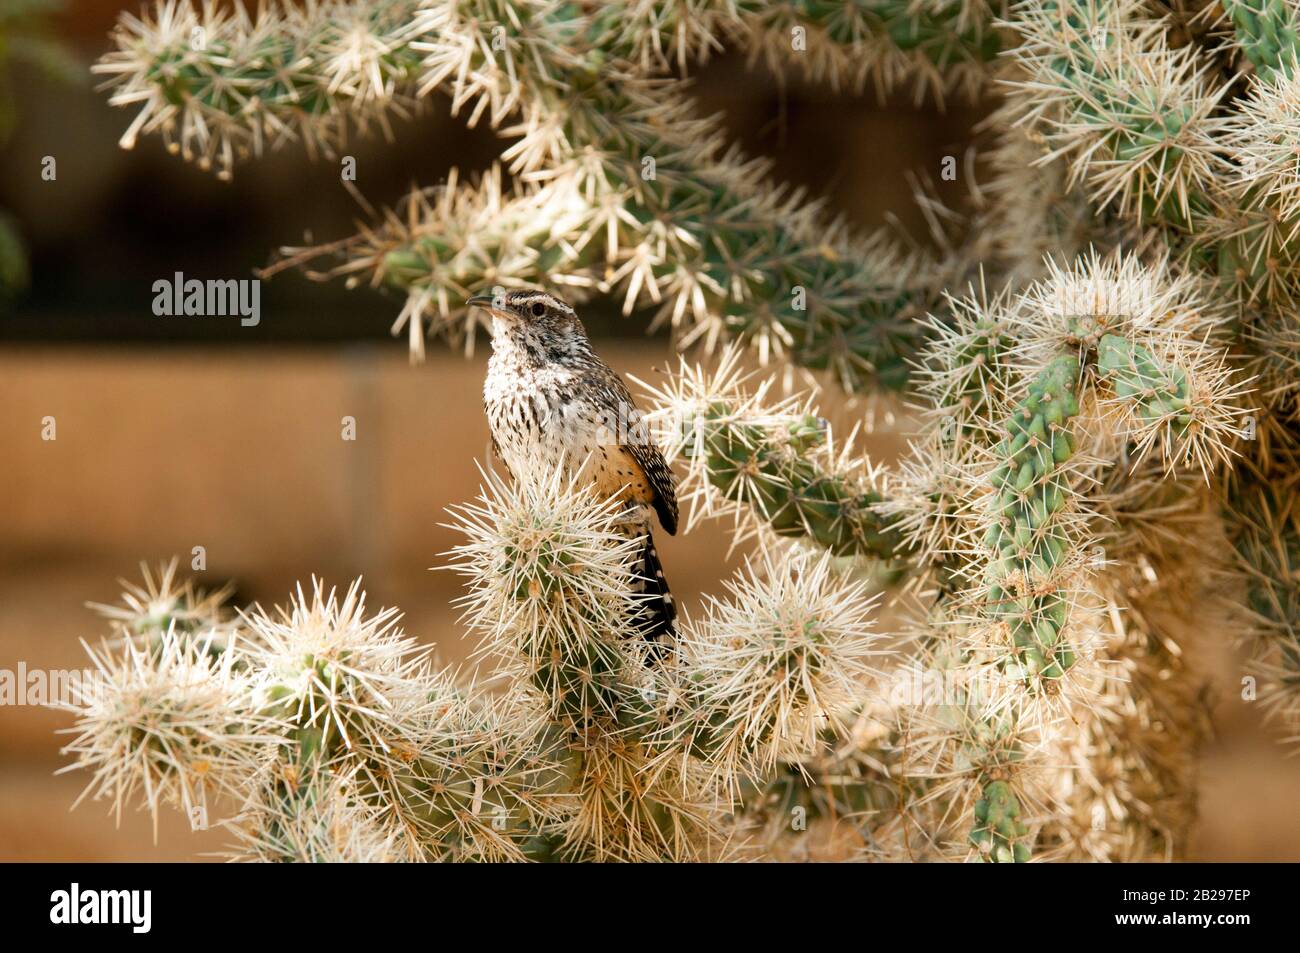 L'oiseau d'État de l'Arizona, le cactus wren, perches et chante dans un cactus de la corolle par temps ensoleillé Banque D'Images